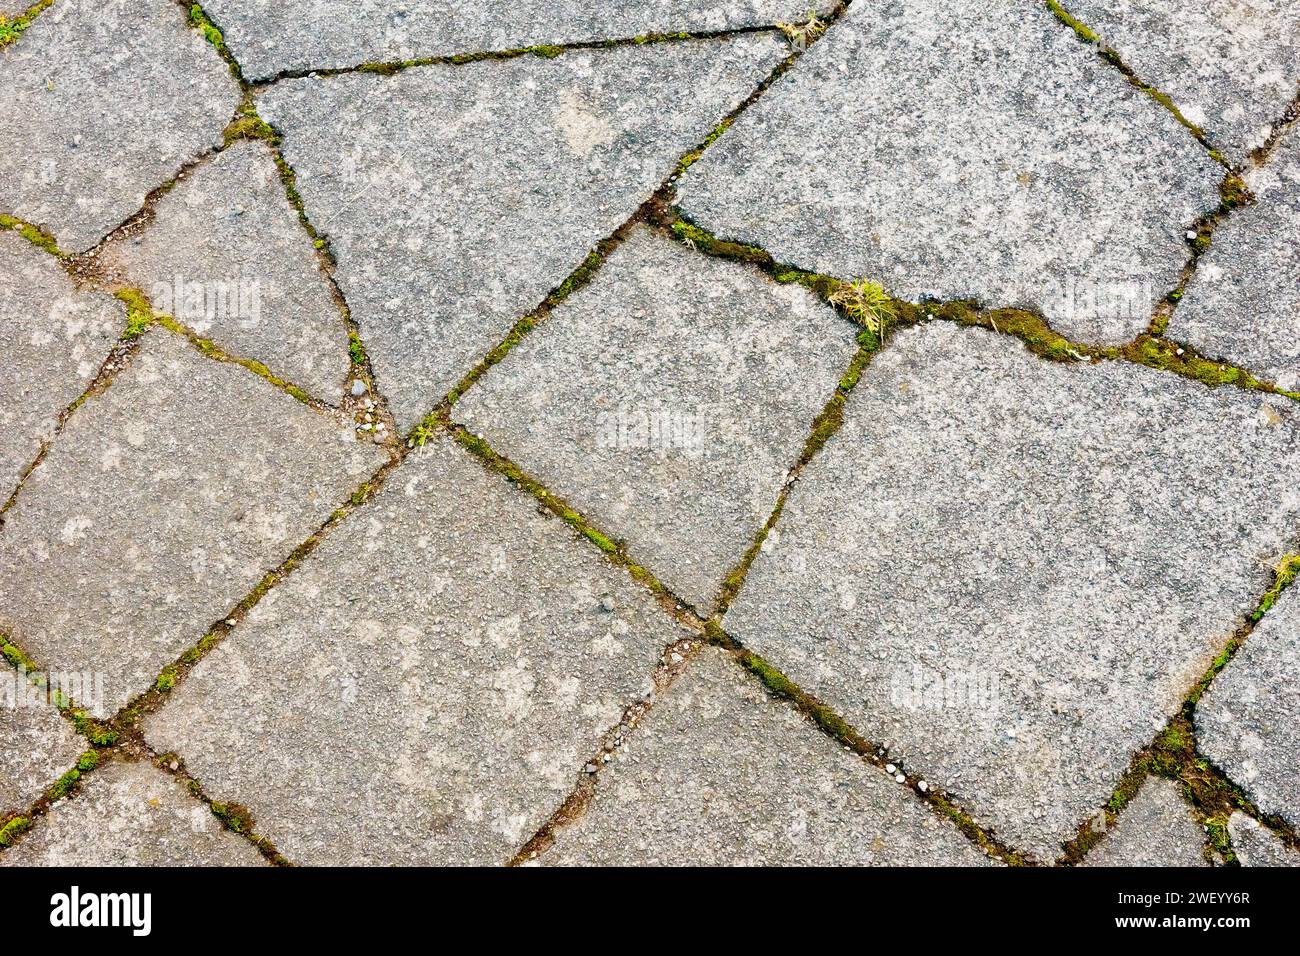 Primo piano con diverse lastre di pavimentazione in calcestruzzo rotte e muschi, erba e altre piante che sfruttano e crescono nelle crepe. Foto Stock